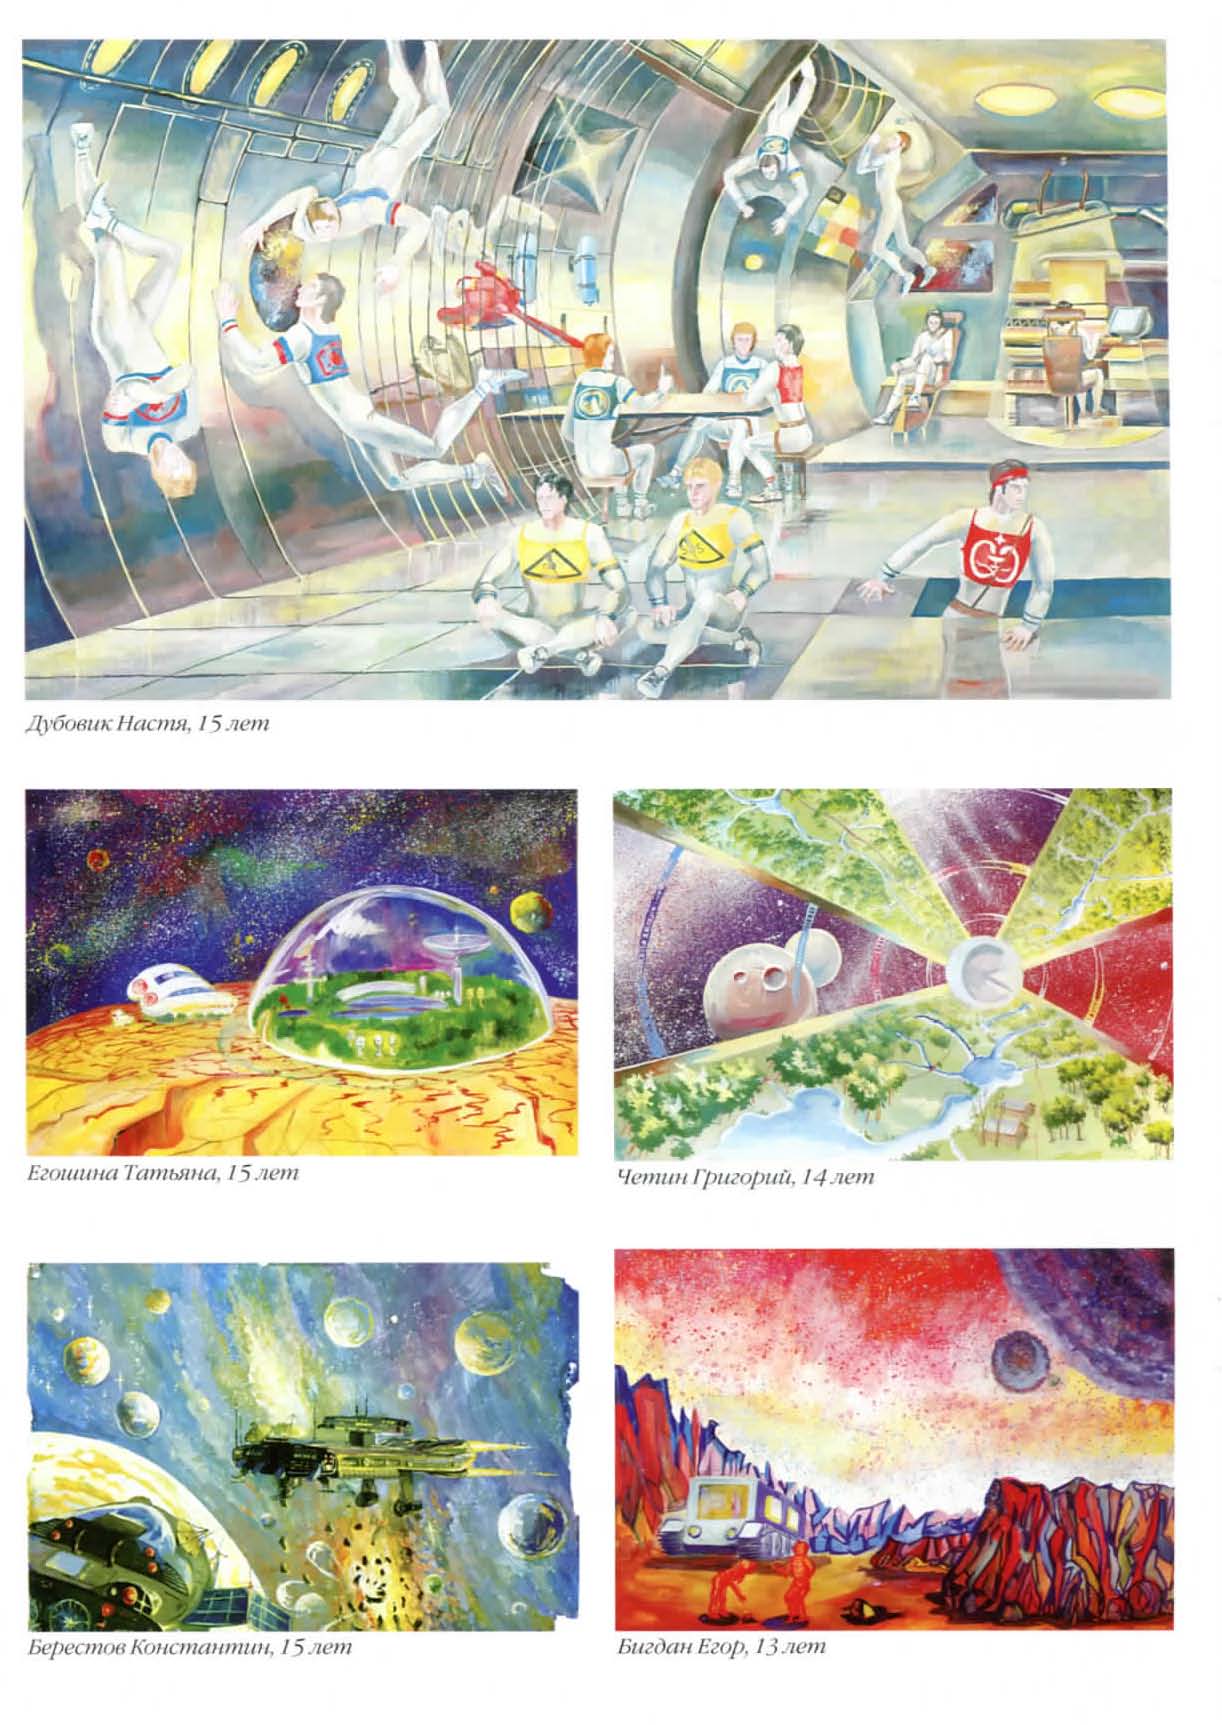 Каталог работ студийцев на космические темы к 50-летию полета человека в космос, страница 6